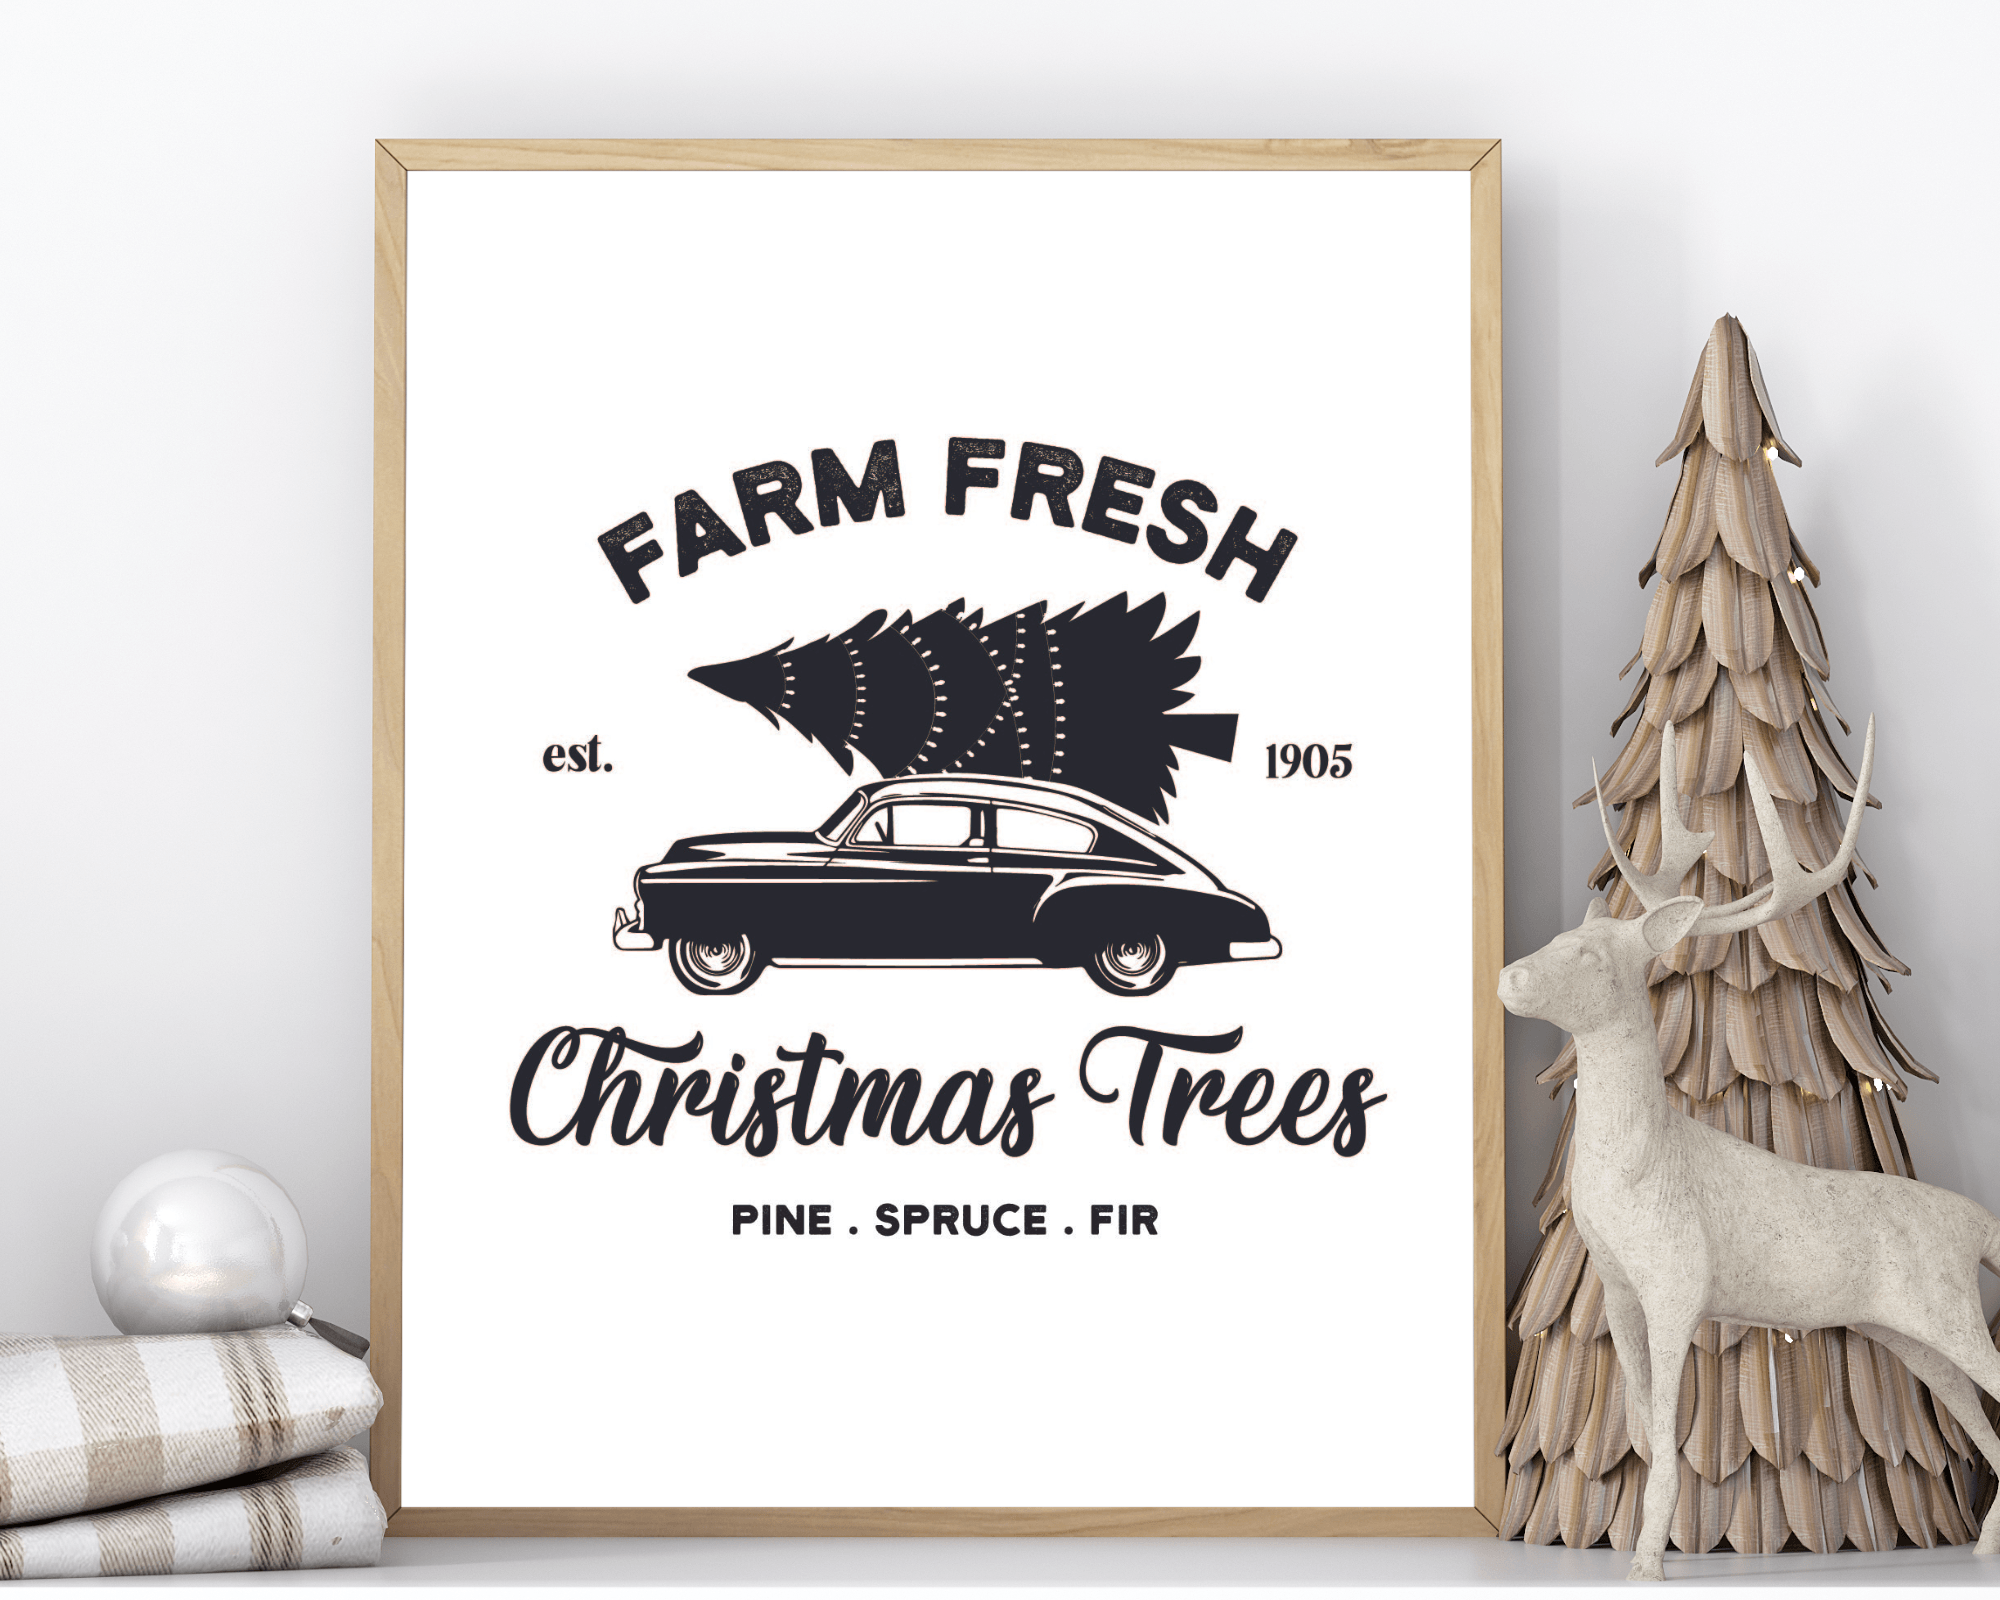 Poster Weihnachten | Farm House Stil | schwarz weiß - Roo's Gift Shop